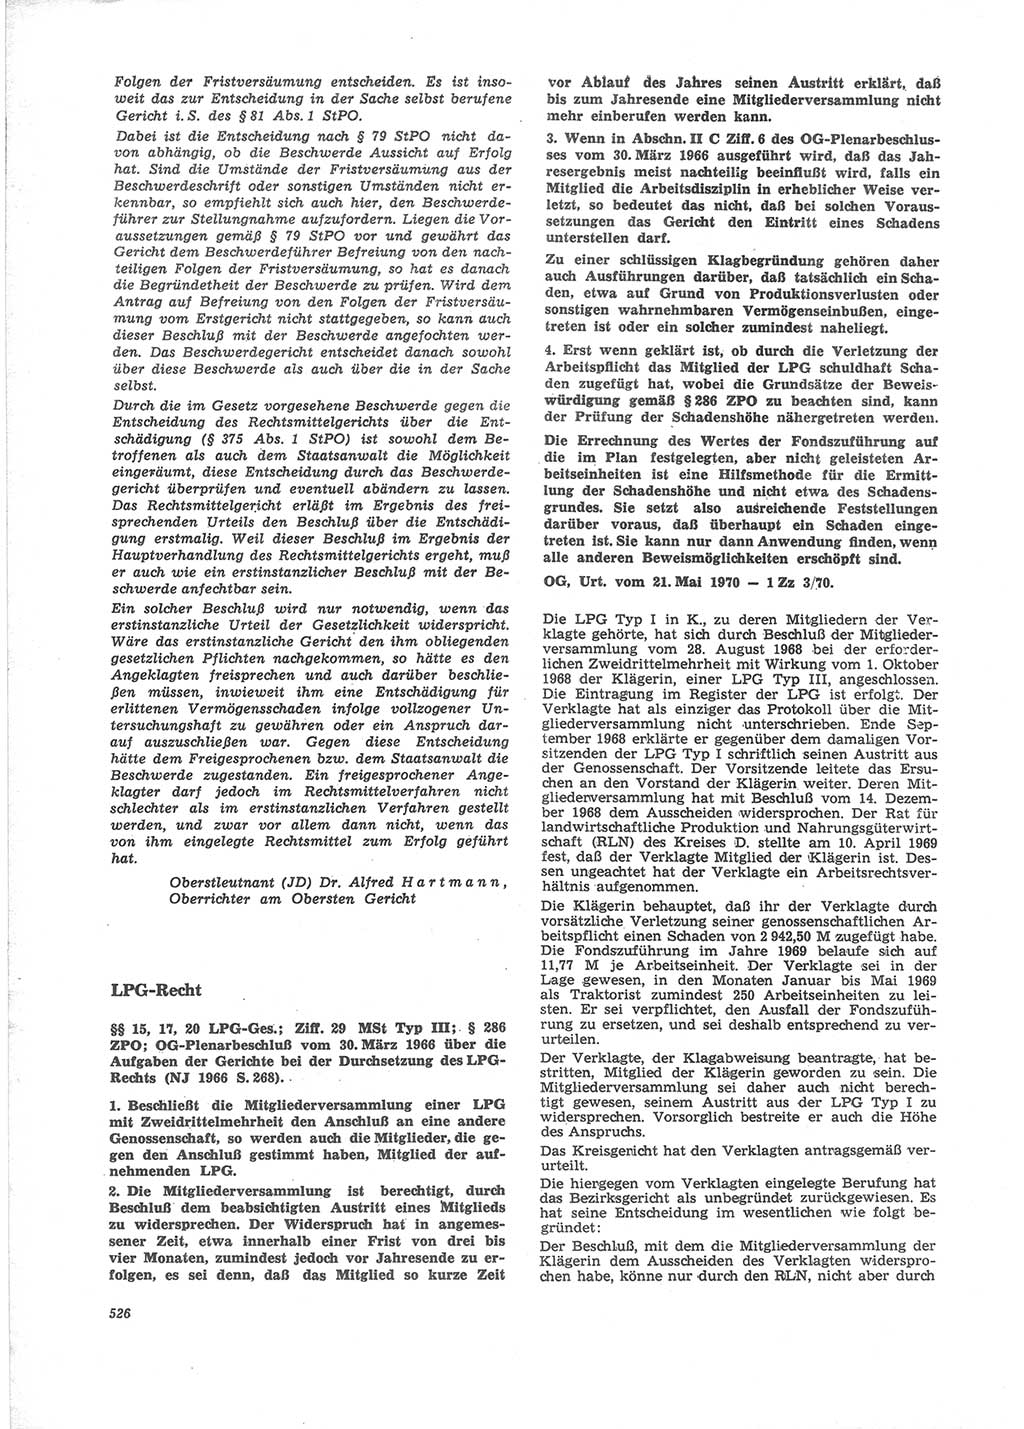 Neue Justiz (NJ), Zeitschrift für Recht und Rechtswissenschaft [Deutsche Demokratische Republik (DDR)], 24. Jahrgang 1970, Seite 526 (NJ DDR 1970, S. 526)